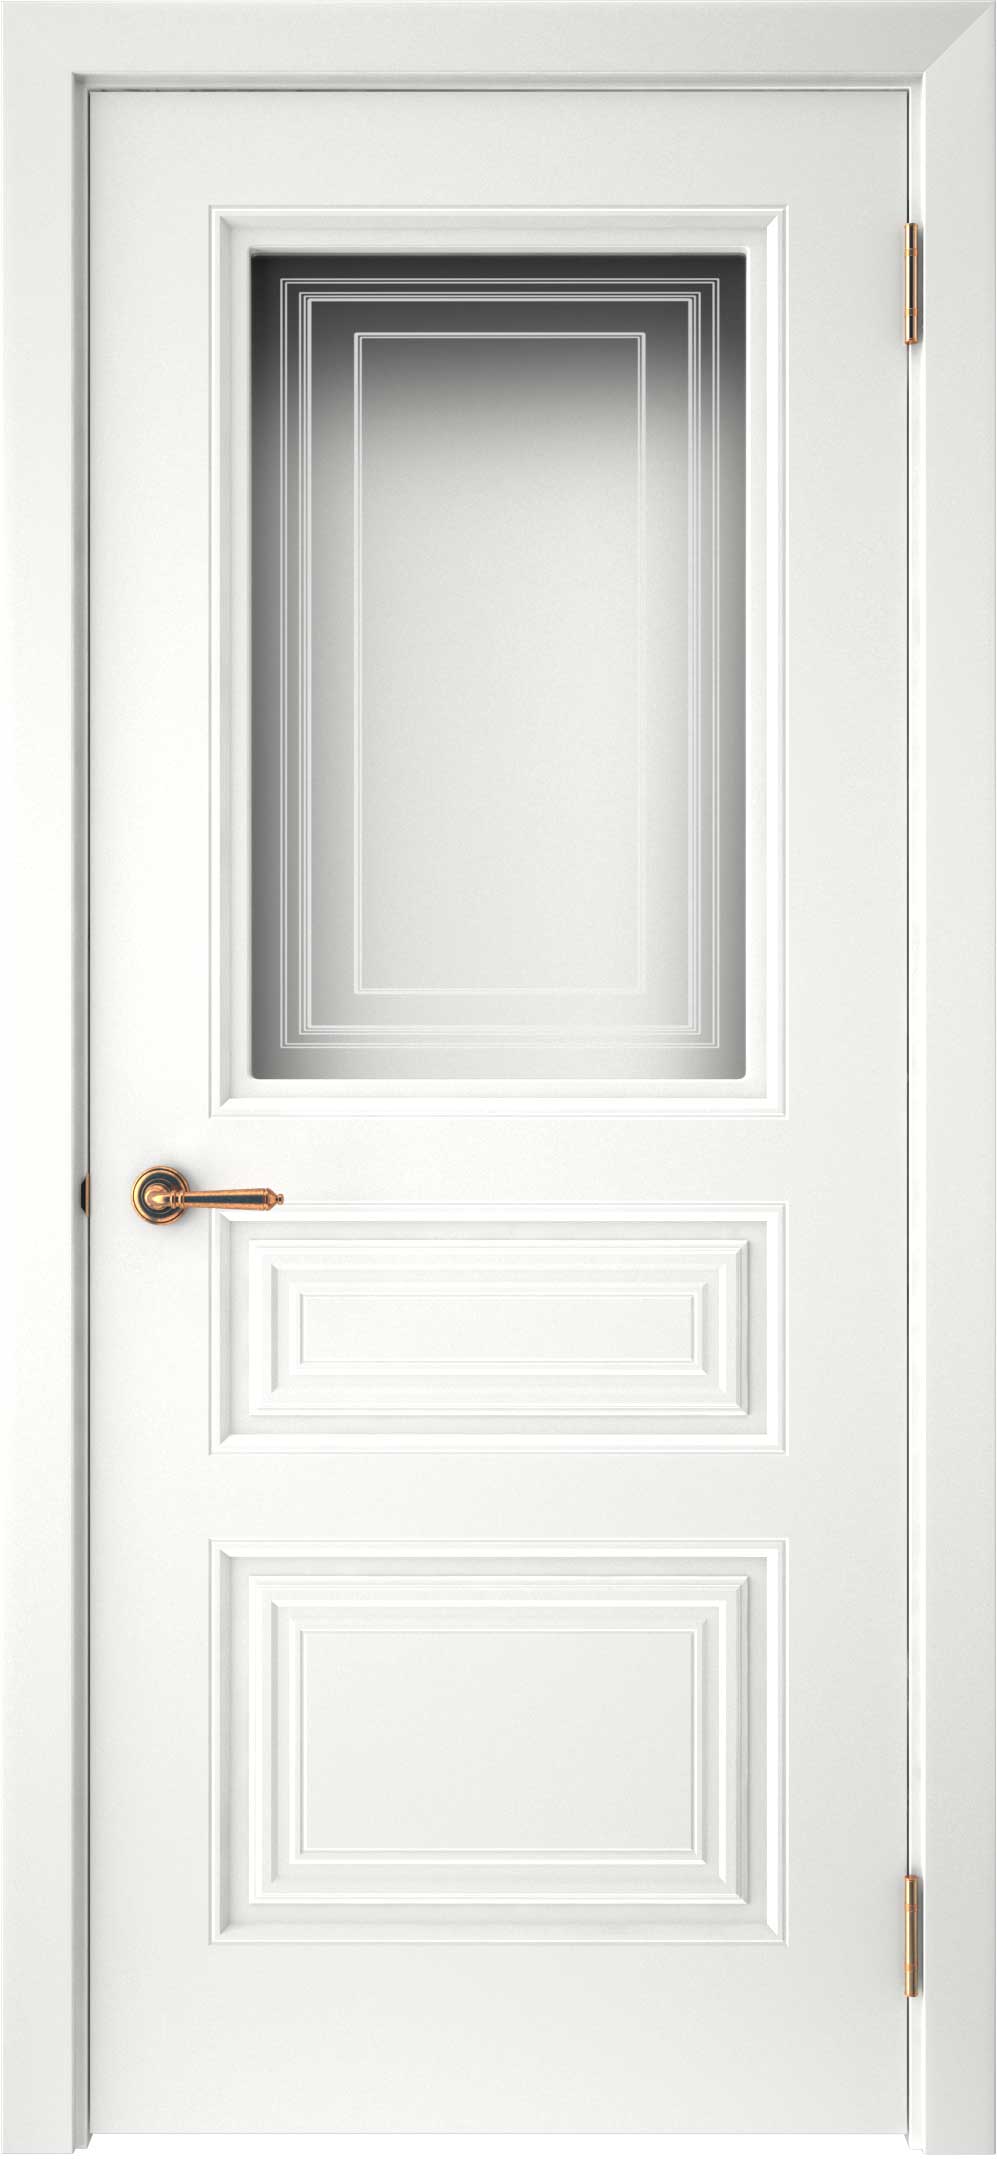 Двери крашеные (Эмаль) ТЕКОНА Смальта-44 со стеклом Белый ral размер 200 х 60 см. артикул F0000093303